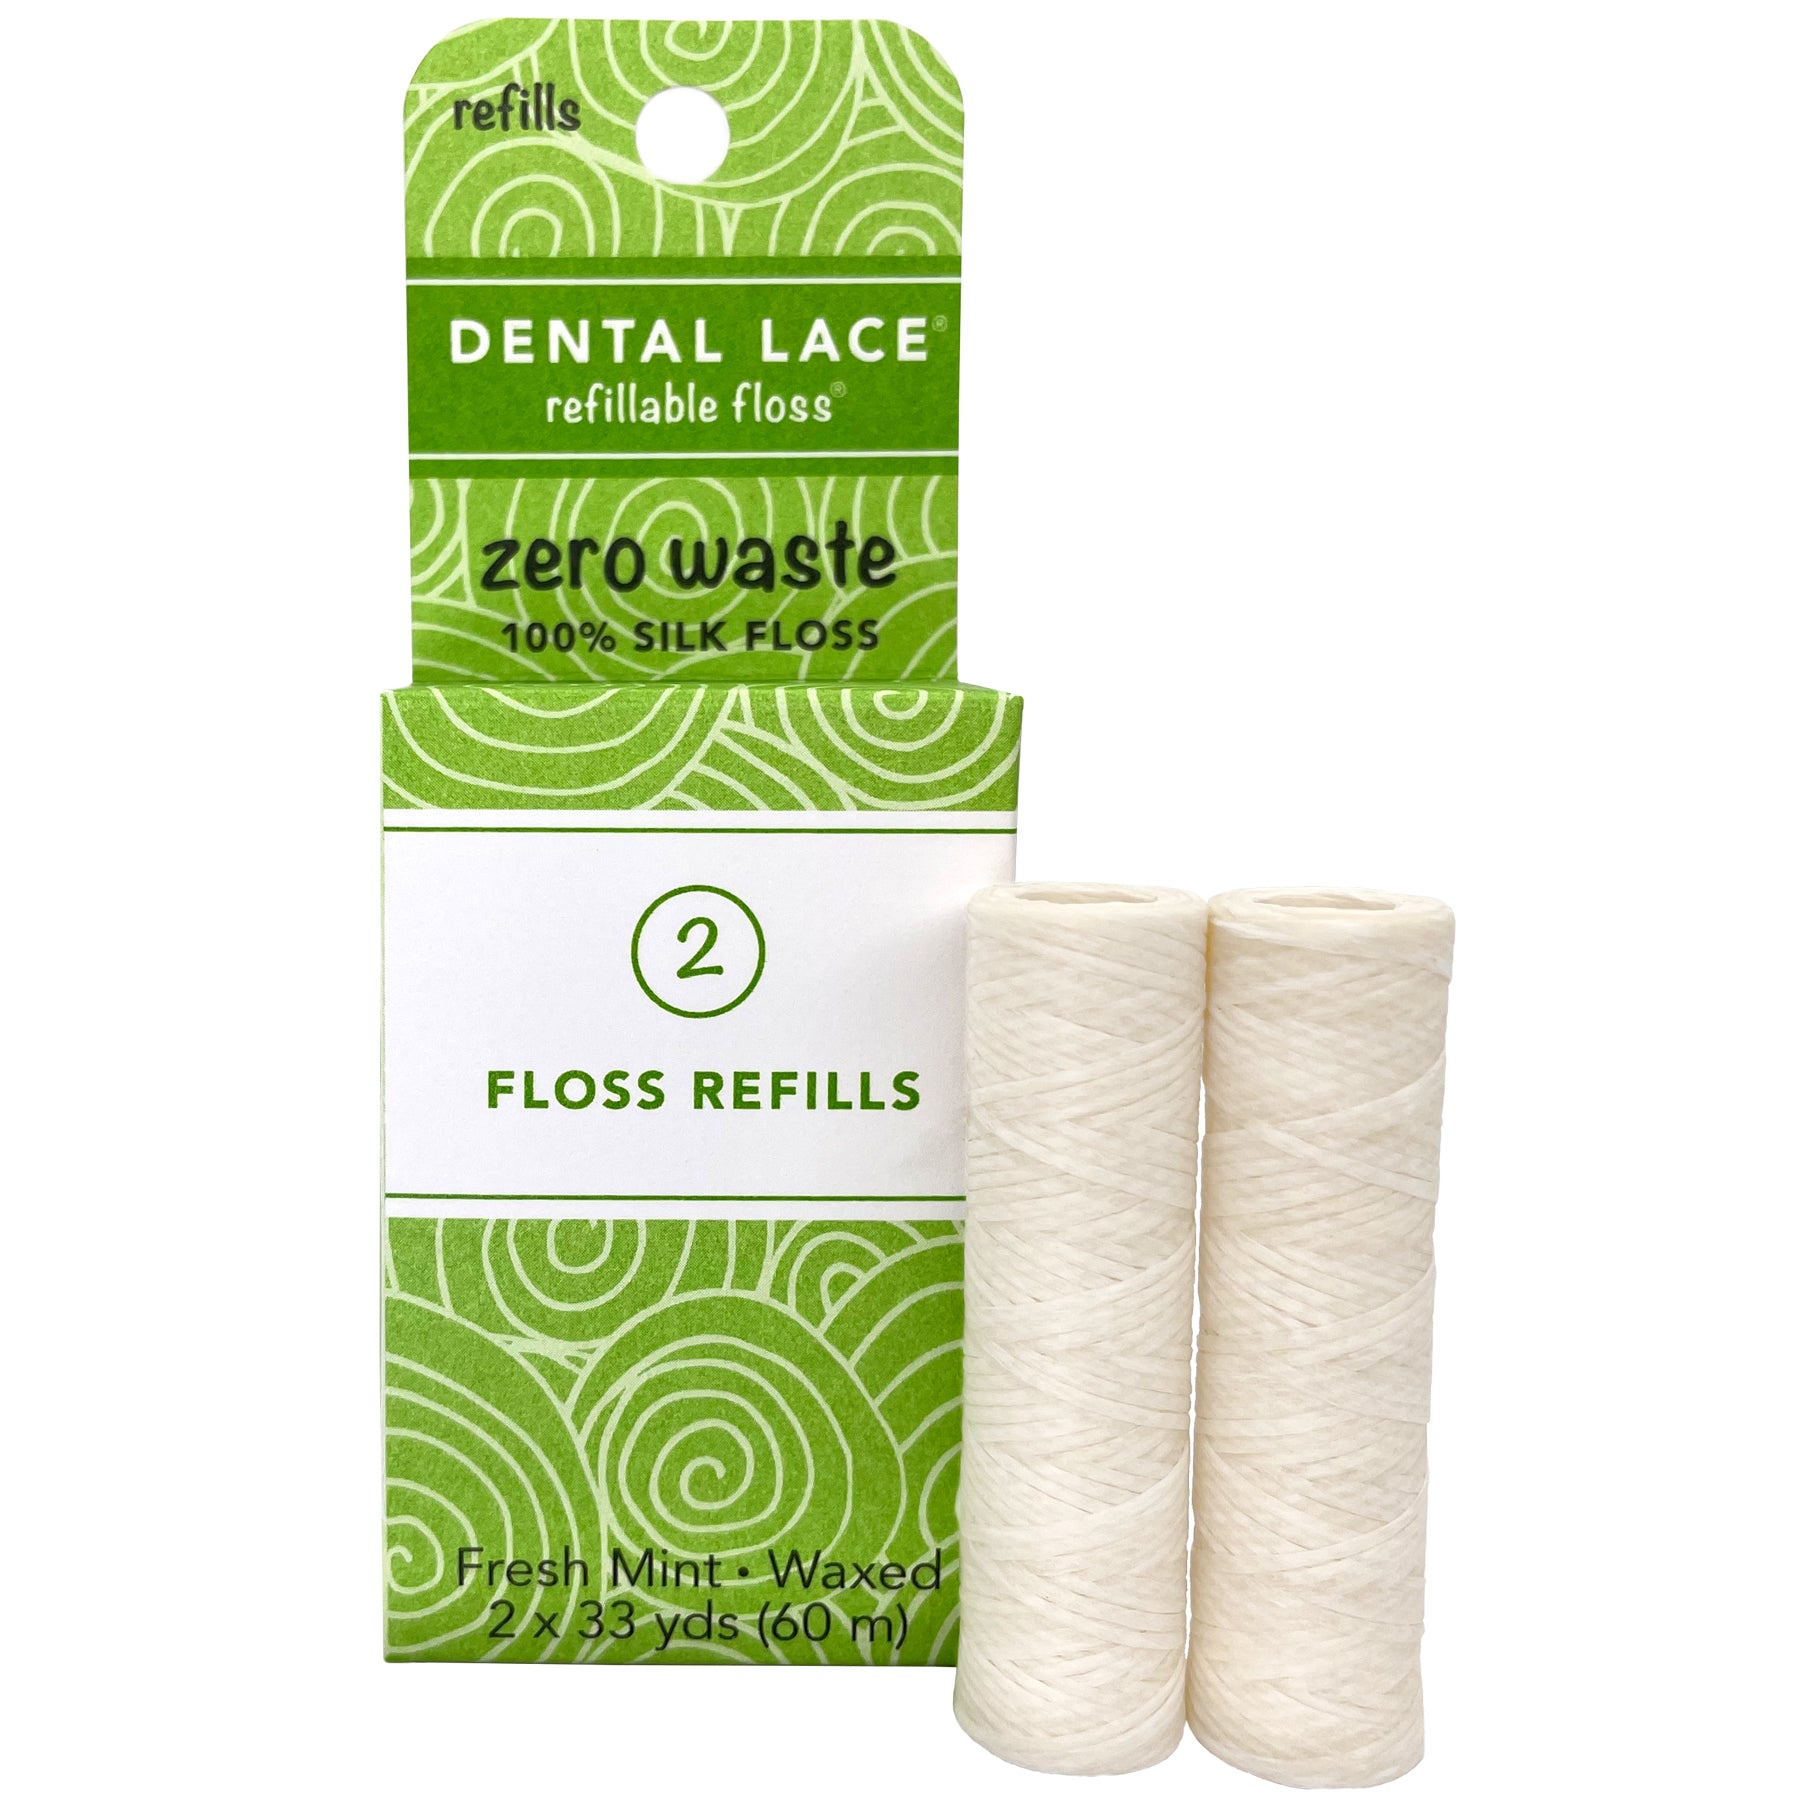 Zero Waste Silk Floss - 2 Month Supply | Dental